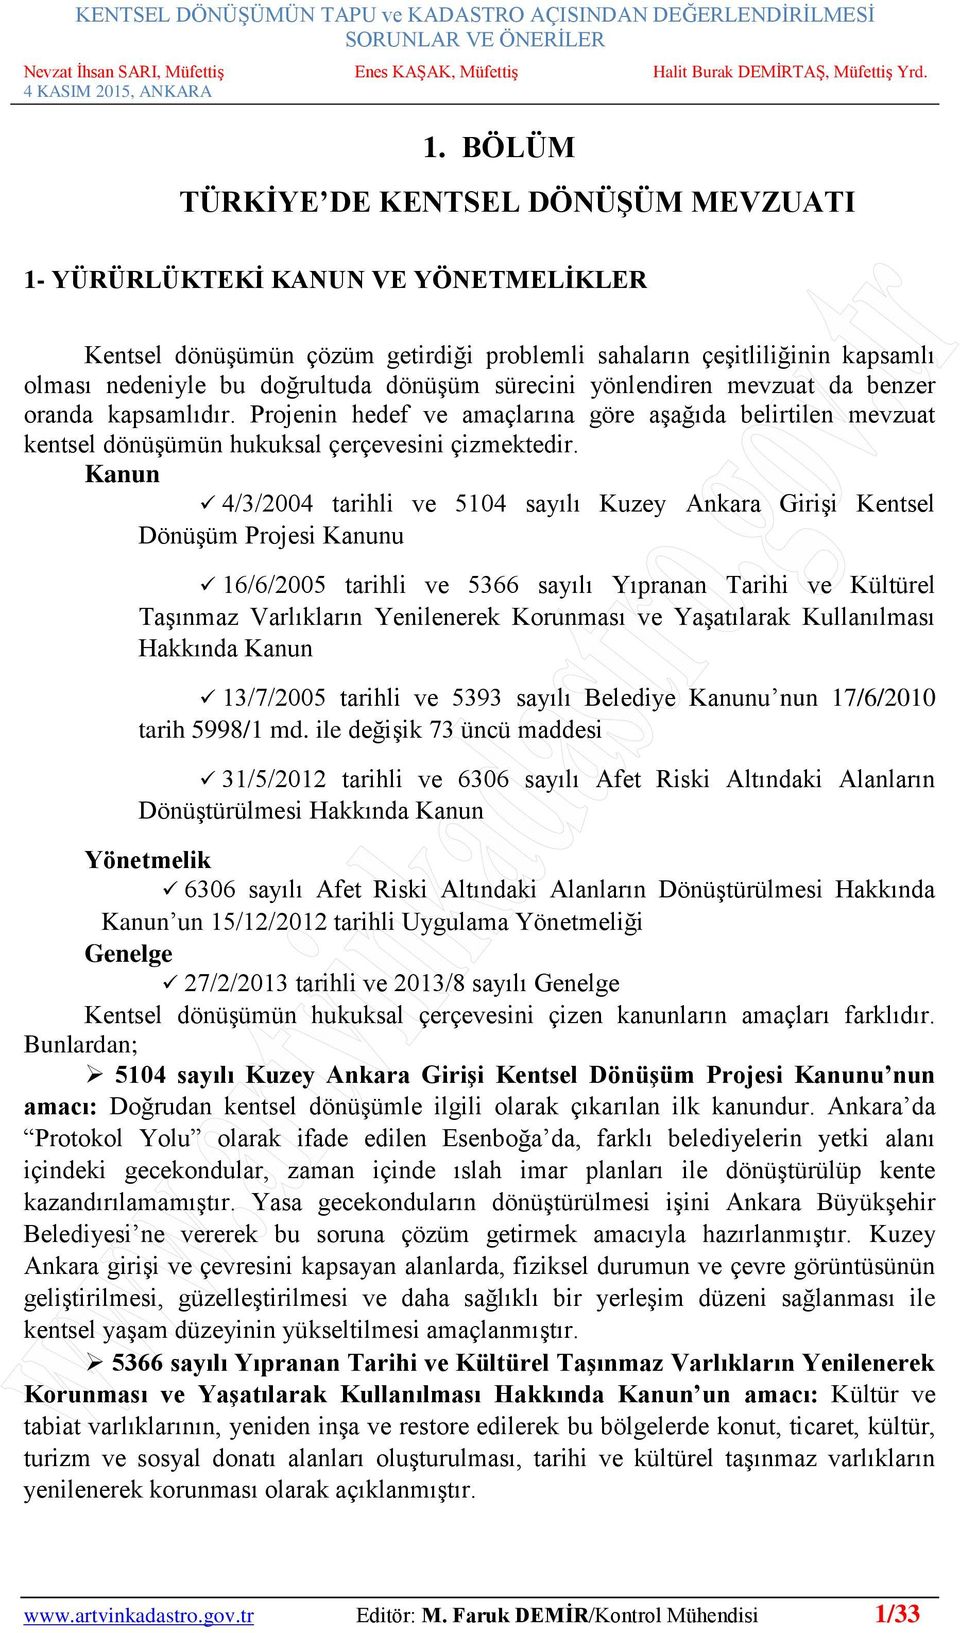 Kanun 4/3/2004 tarihli ve 5104 sayılı Kuzey Ankara Girişi Kentsel Dönüşüm Projesi Kanunu 16/6/2005 tarihli ve 5366 sayılı Yıpranan Tarihi ve Kültürel Taşınmaz Varlıkların Yenilenerek Korunması ve